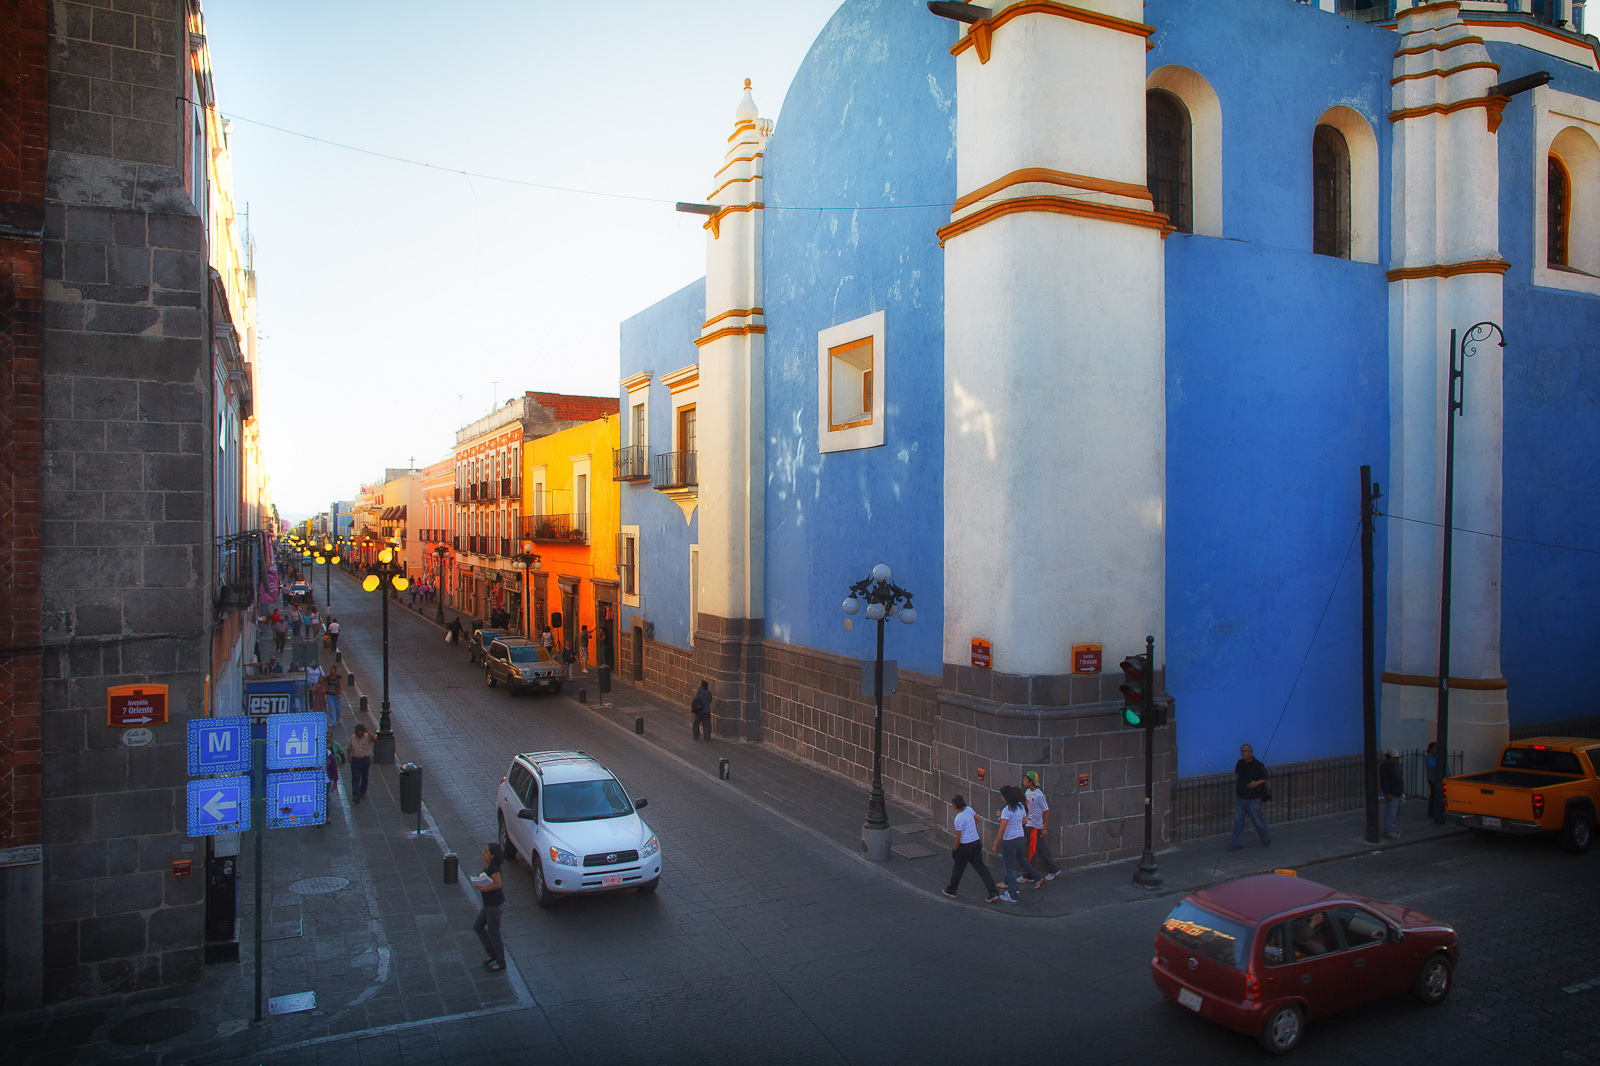 Sunset in Puebla, patrimonio de la humanidad